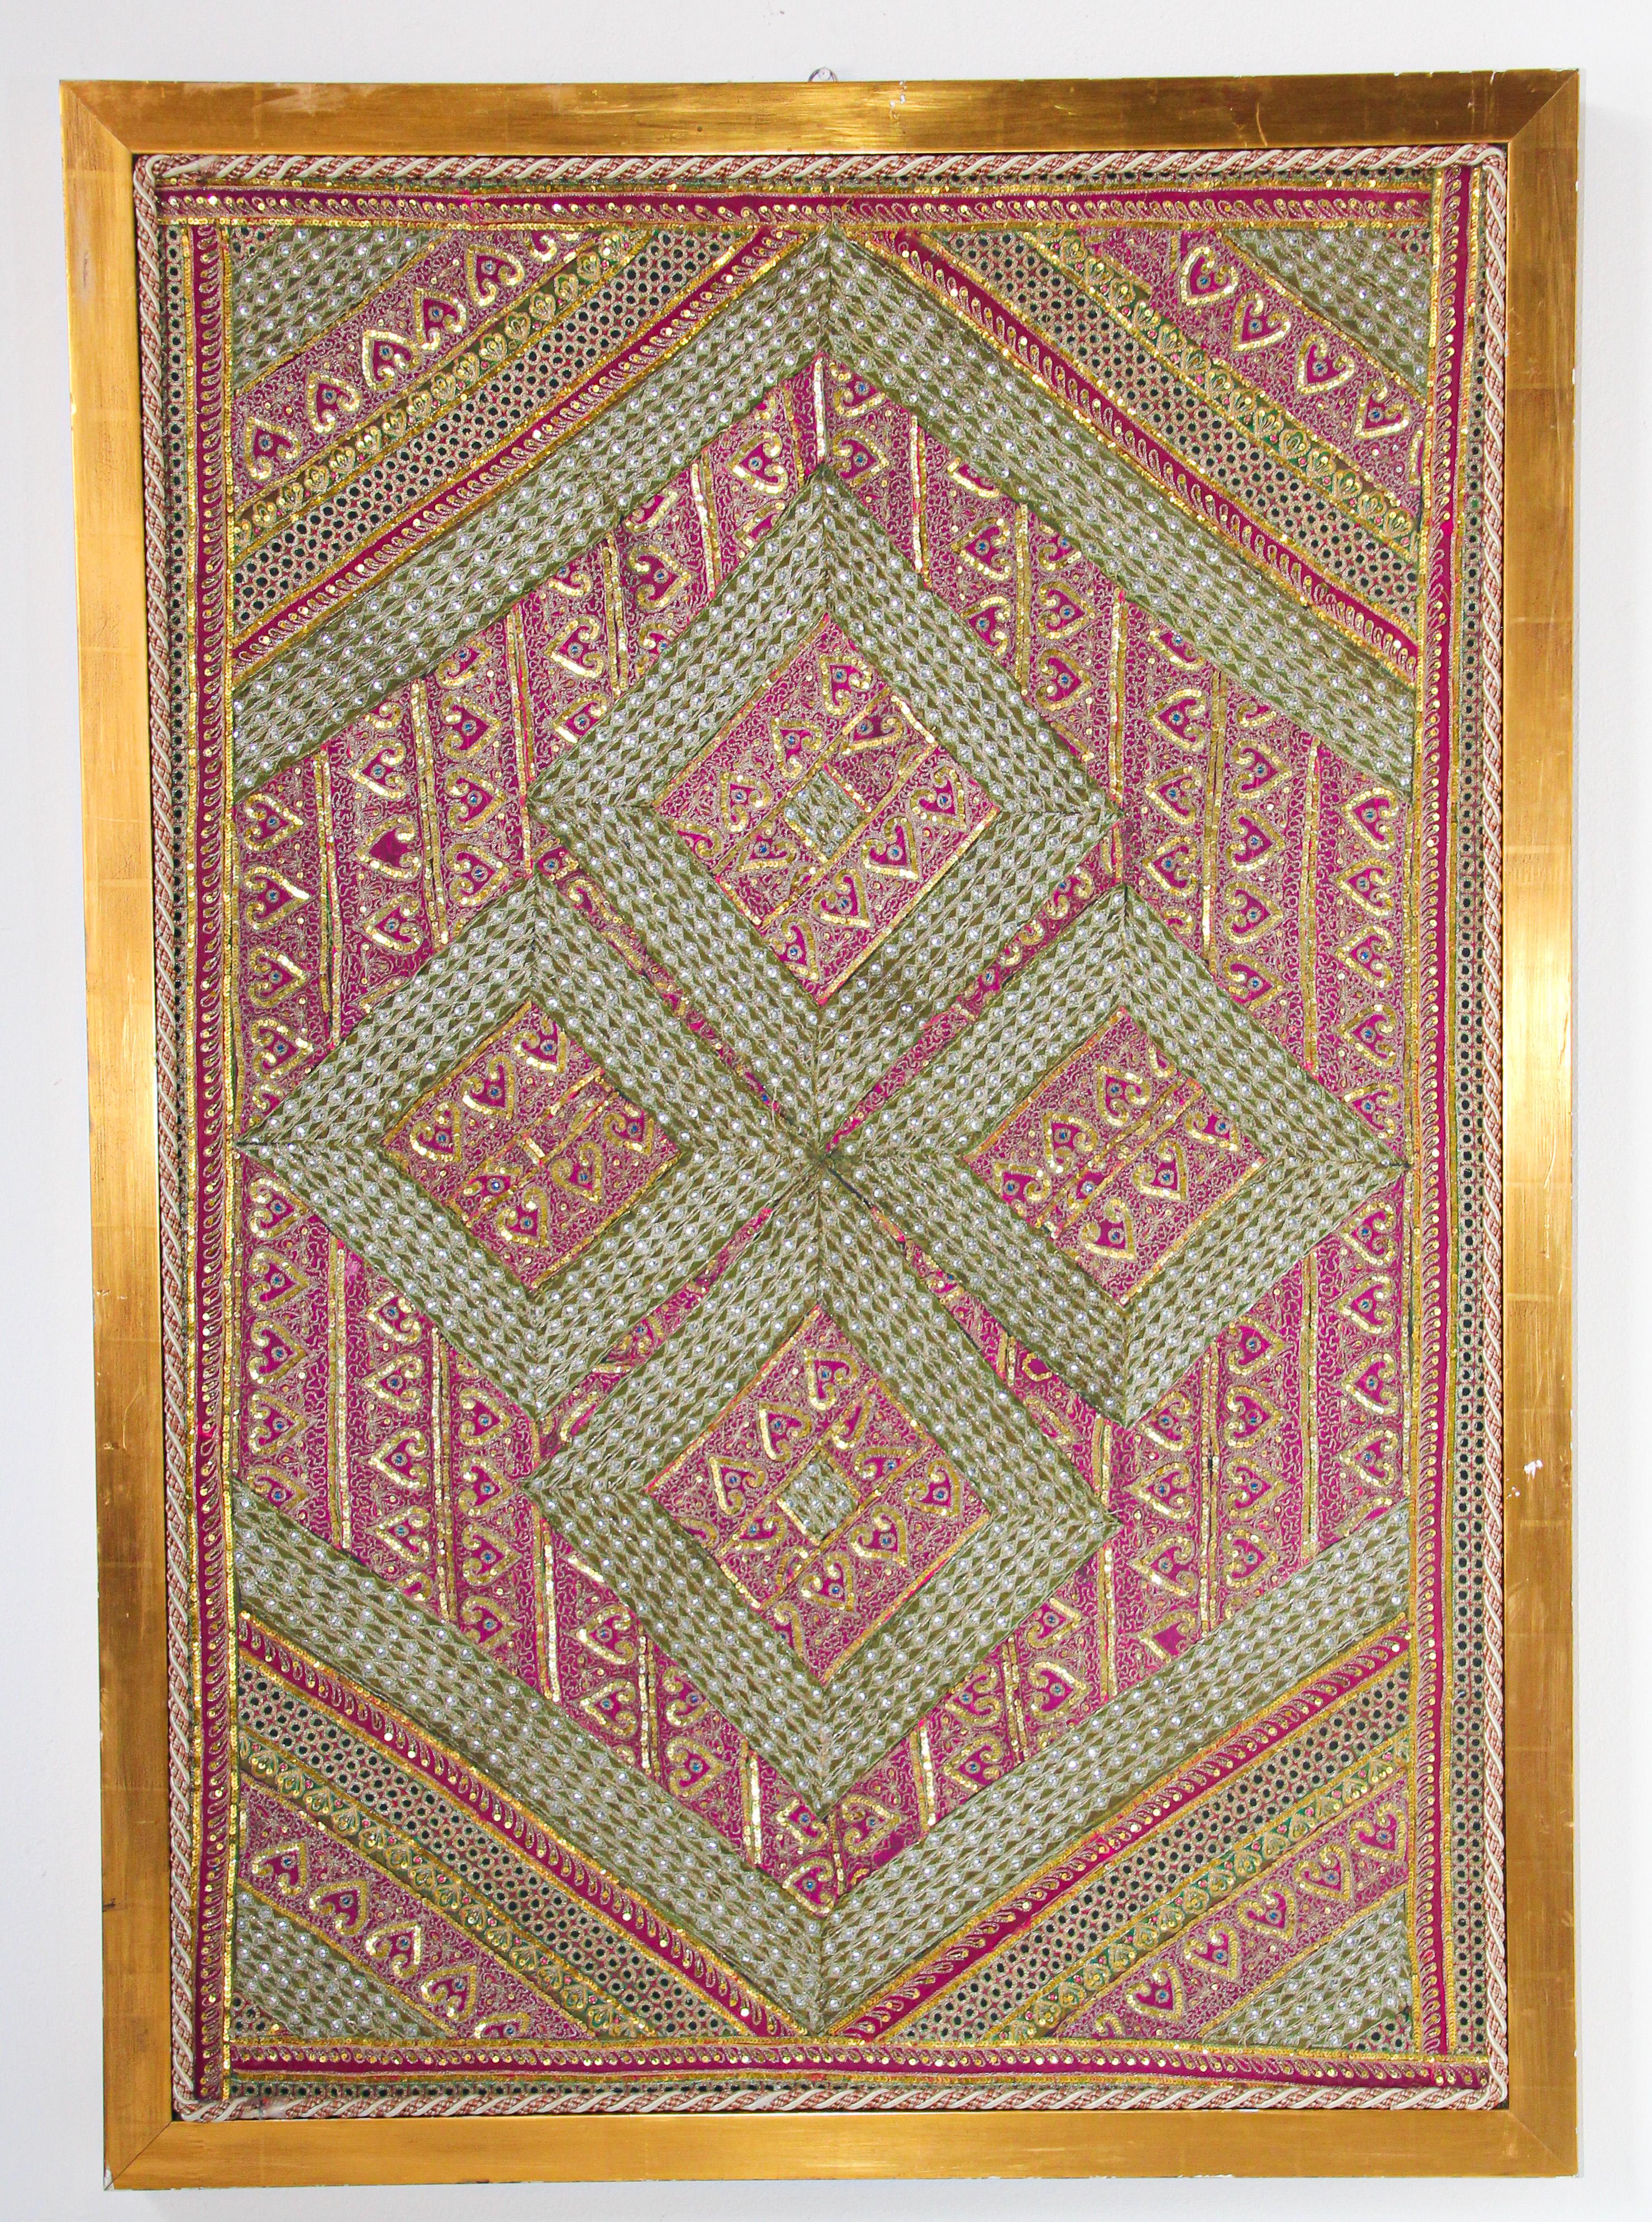 Großes handgesticktes und gestepptes Textil aus Nordindien.
Gerahmter Wandteppich aus Seide und Metall im Mughal-Stil aus Rajasthan, Indien
Fantasievolles asiatisches Volkskunstdesign in dieser unverwechselbaren Quiltarbeit mit einem echten Sinn